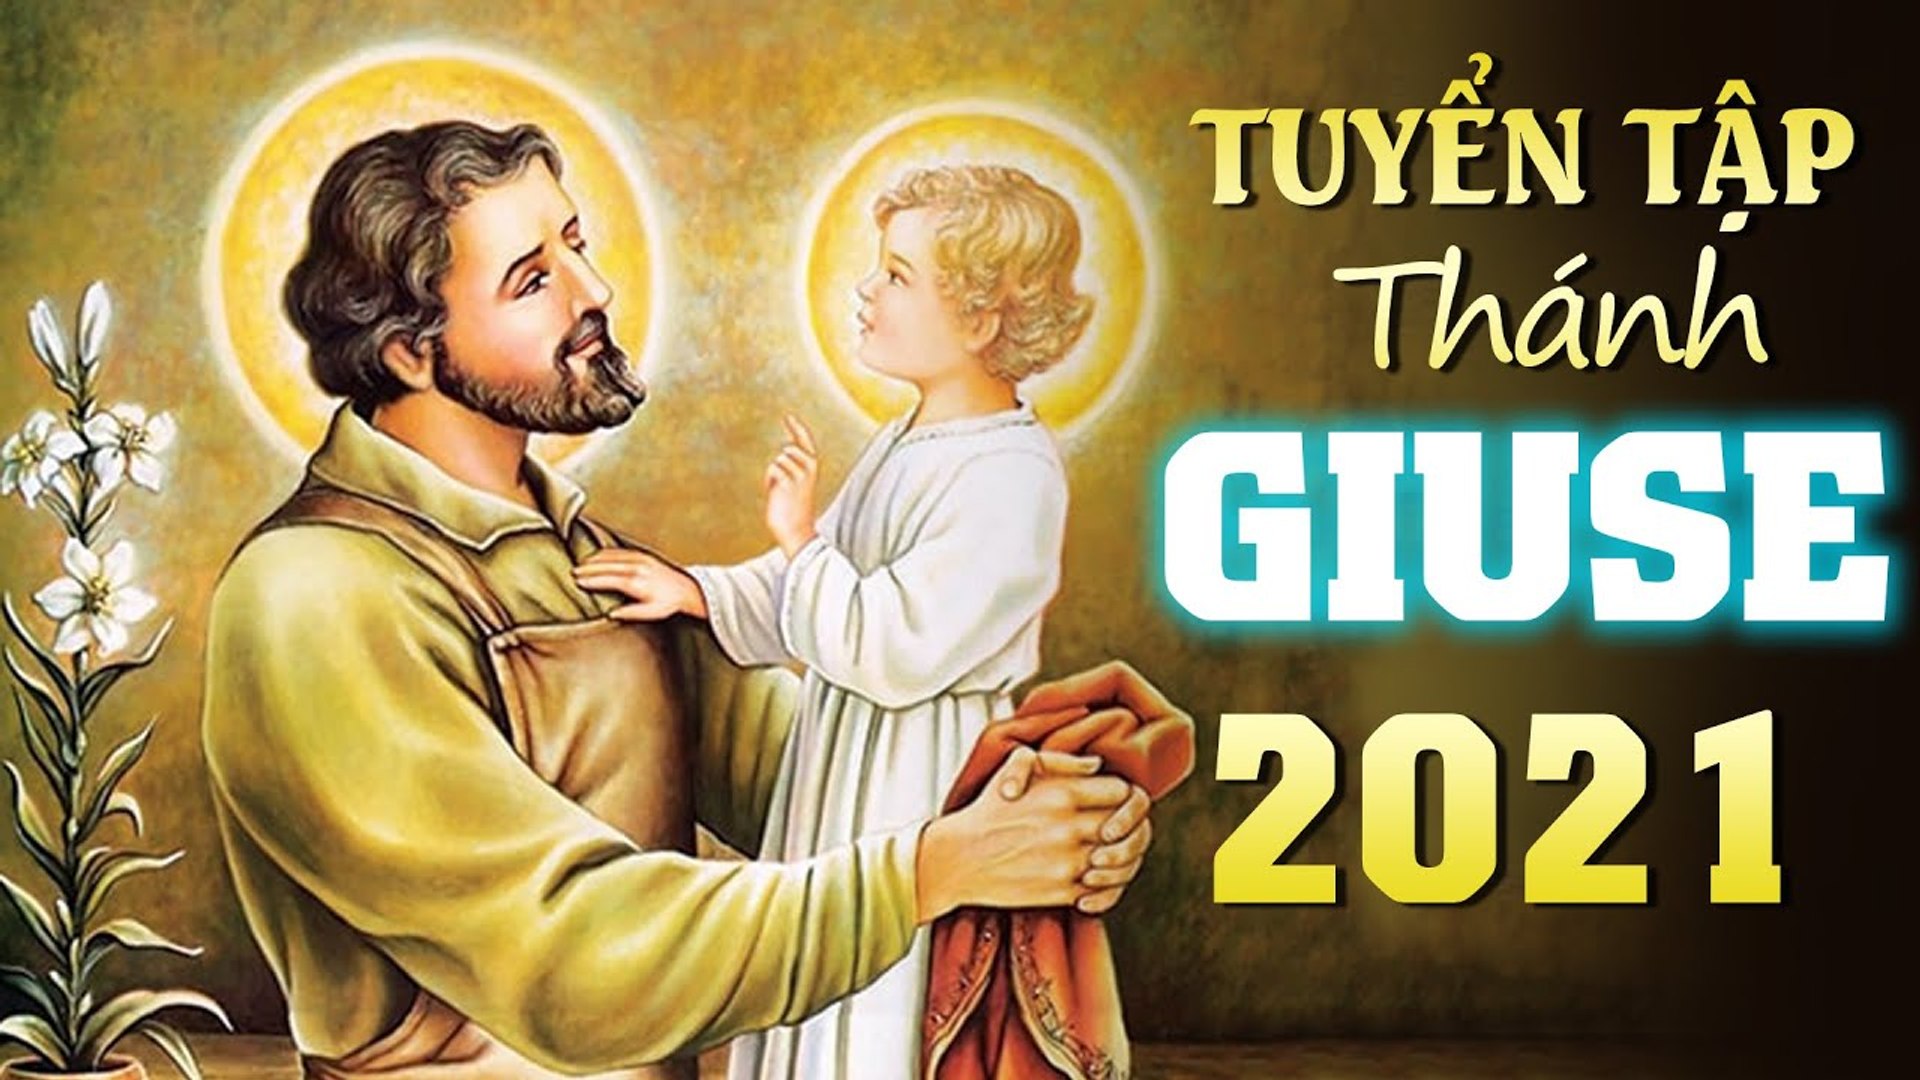 Giuse - Cha Công Chính Album Tuyển Tập Thánh Ca Về Thánh Giuse Hay Nhất  2021 - Ca Mừng Thánh Giuse - Video Dailymotion